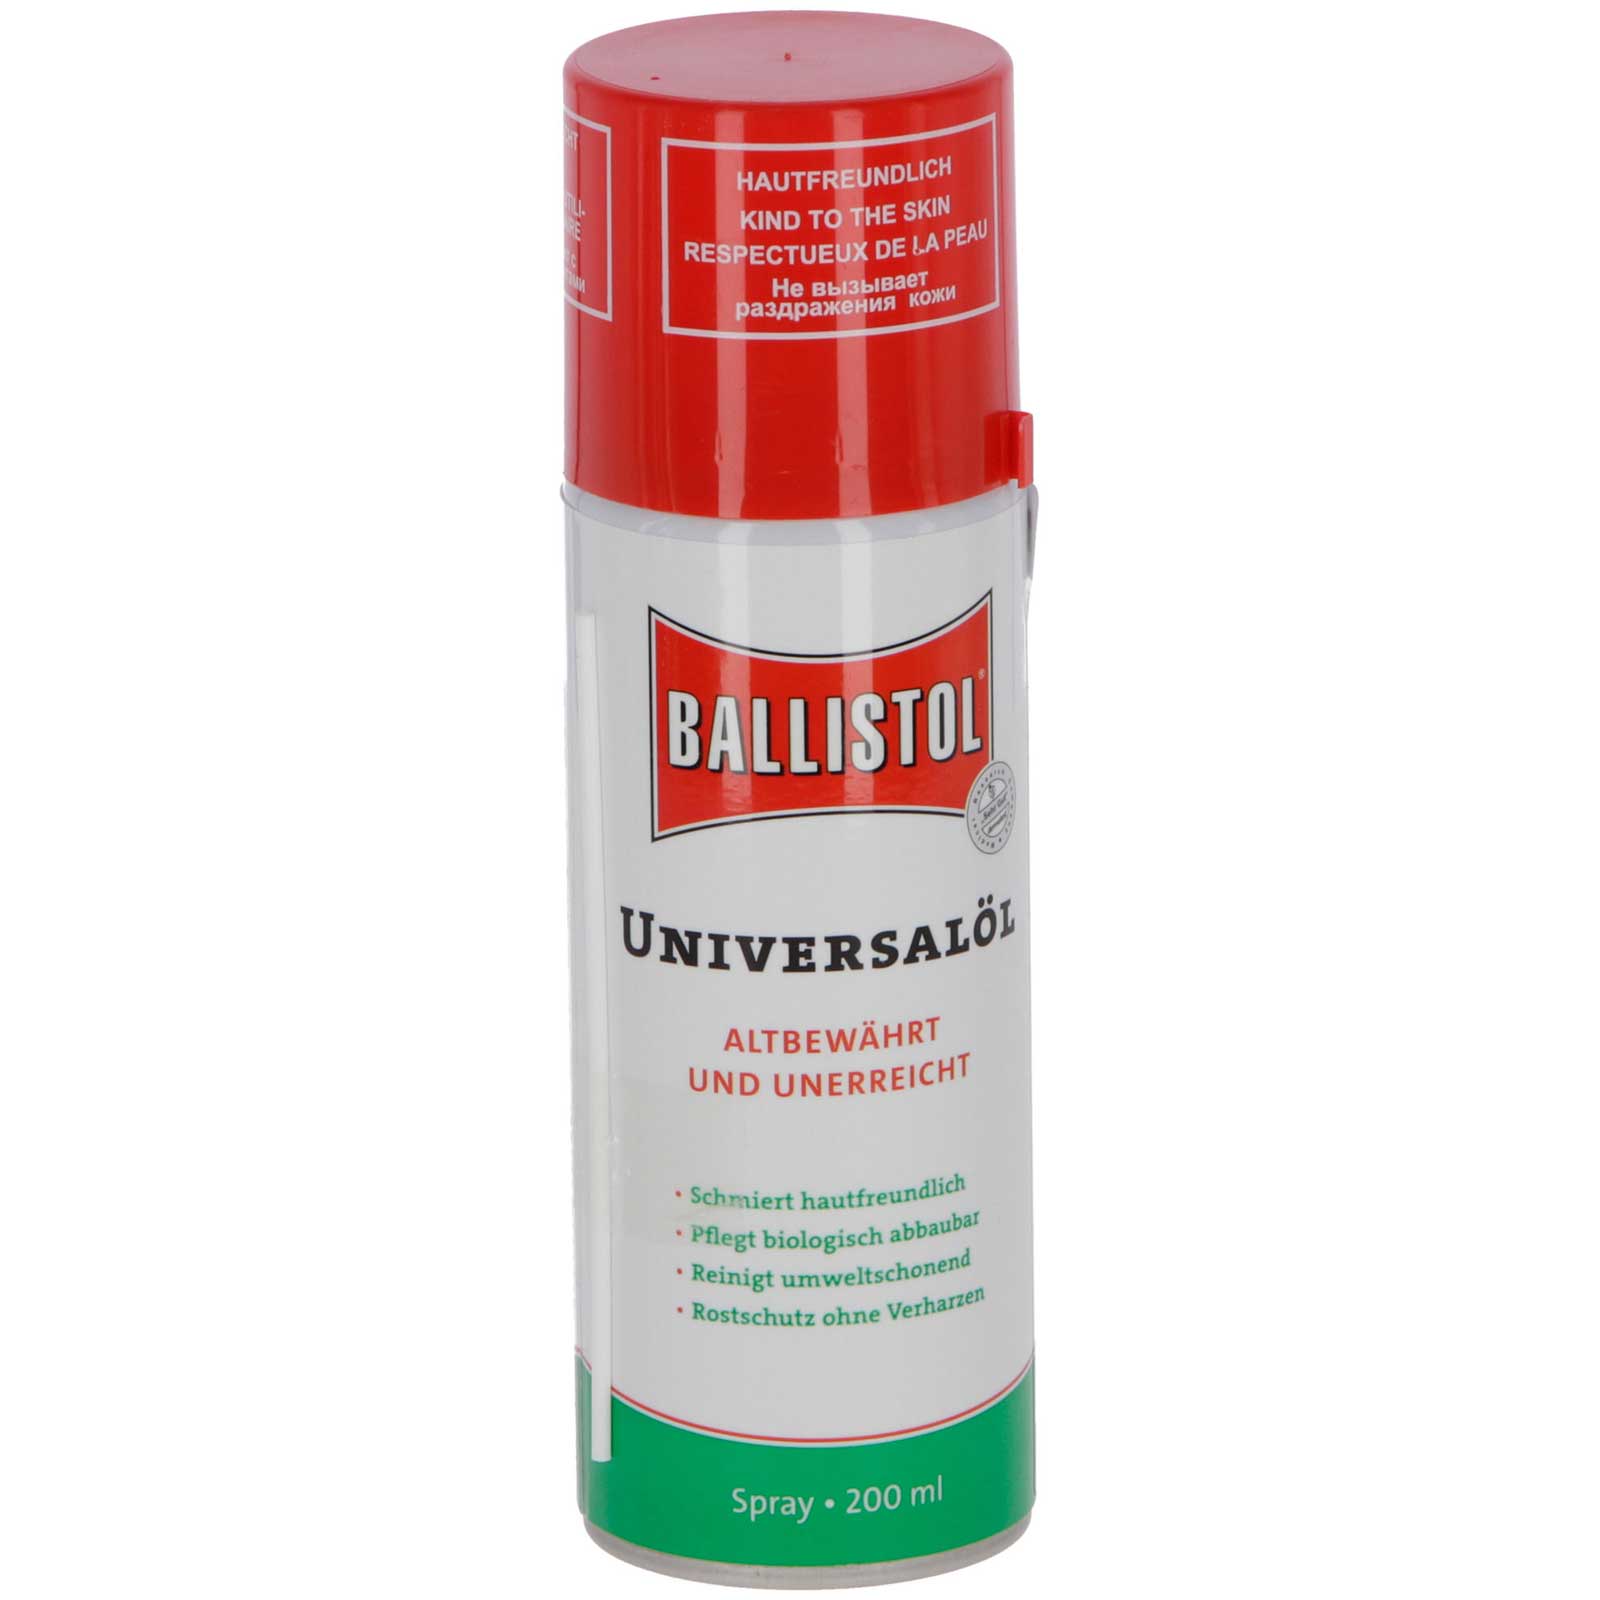 BALLISTOL - Universal Oil